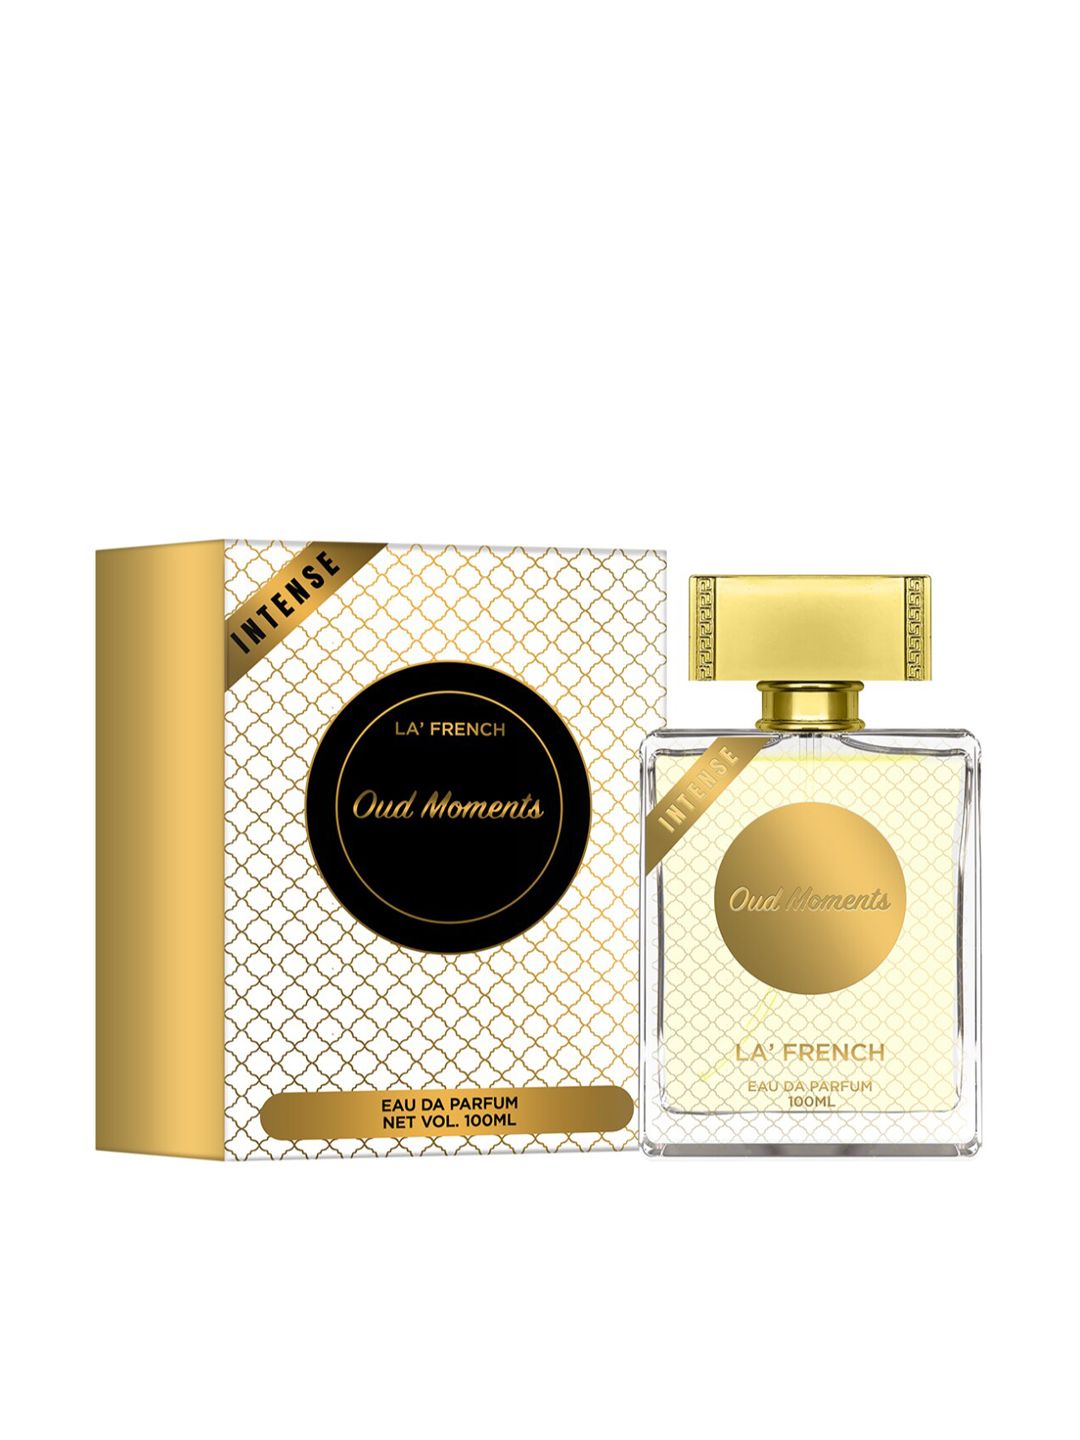 La French Oud Moment Eau De Parfum - 100 ml Price in India